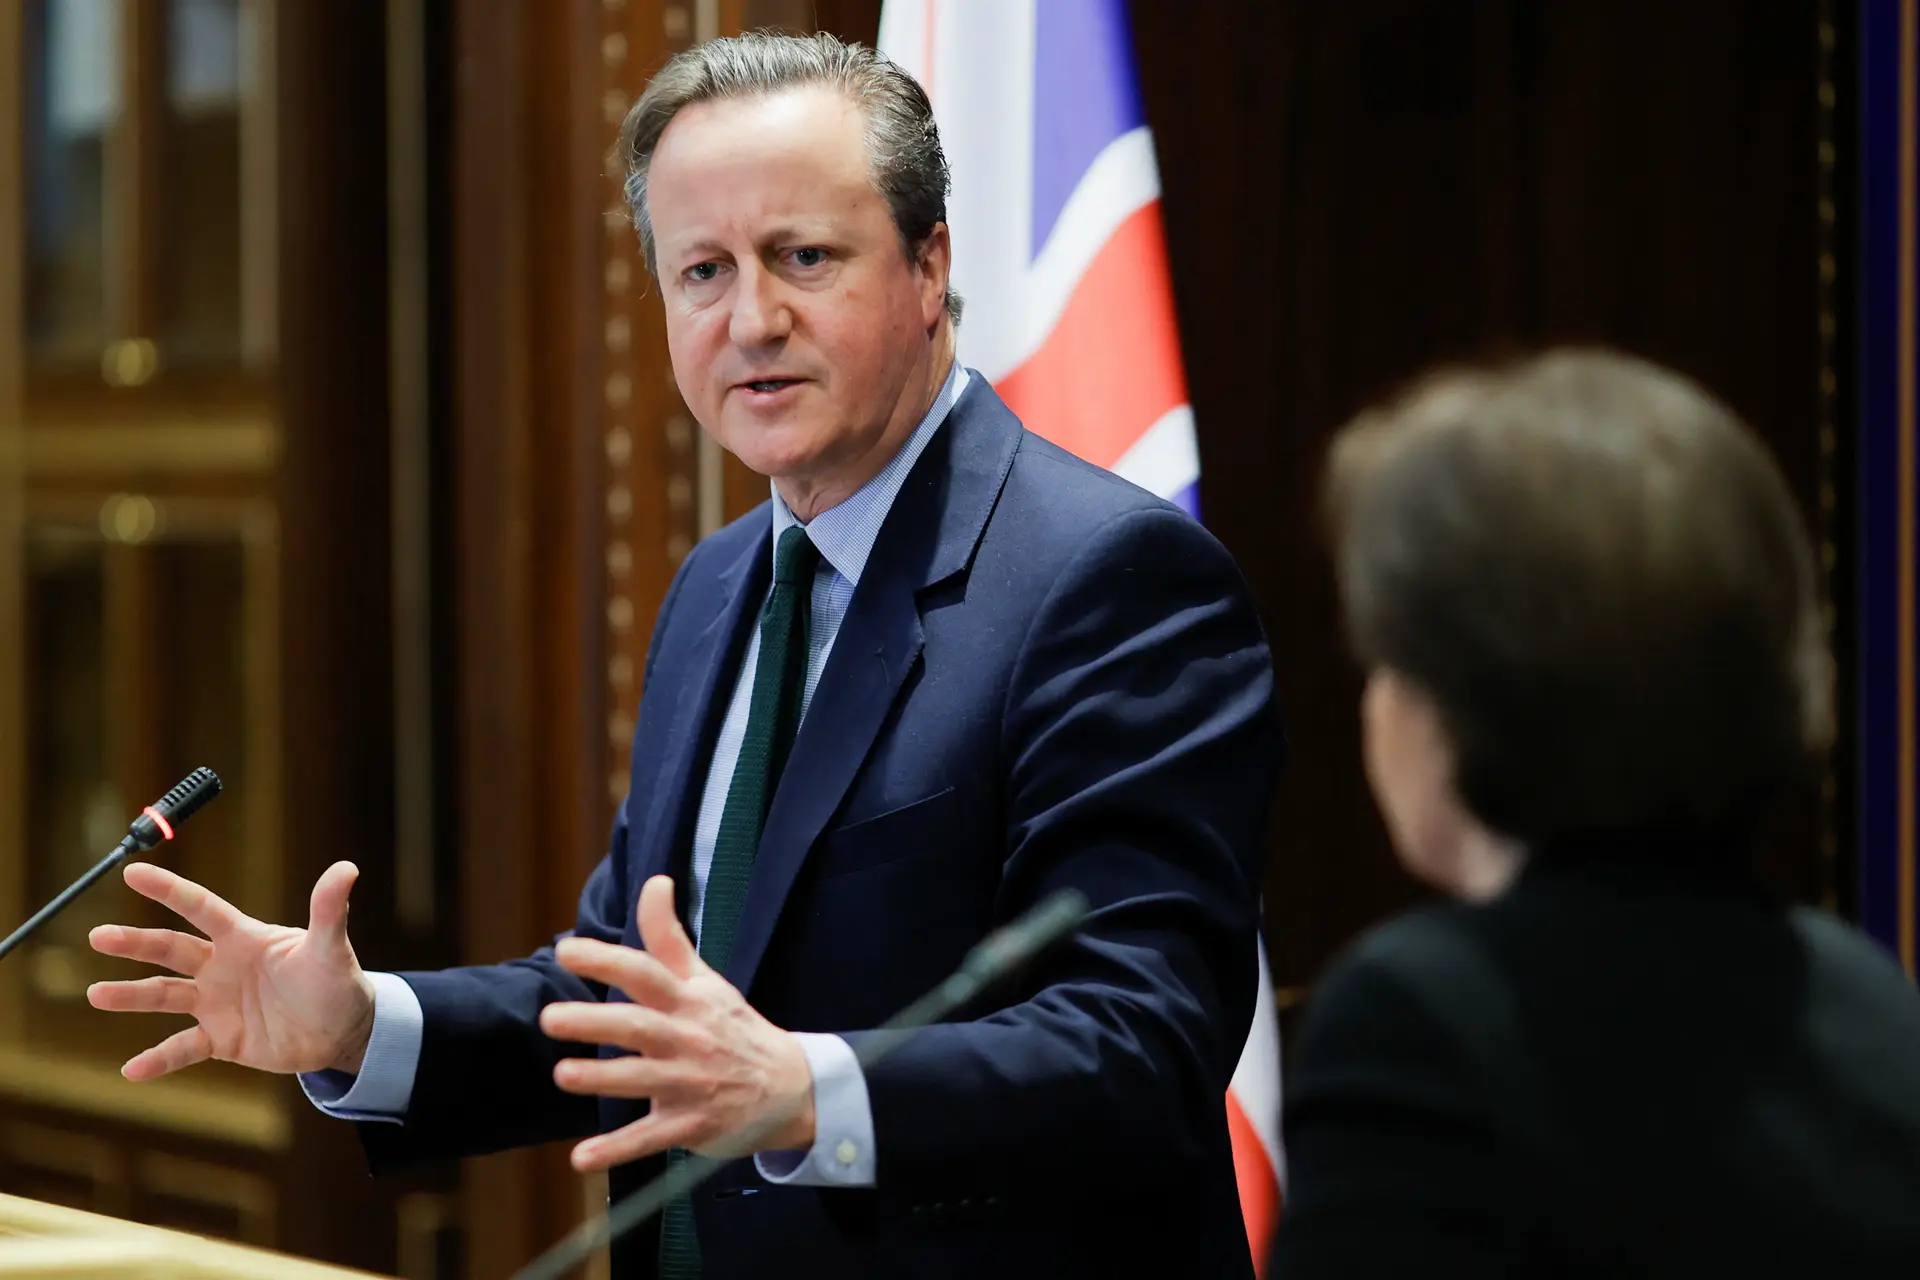 Reino Unido avisa que "apoio a Israel não é incondicional"